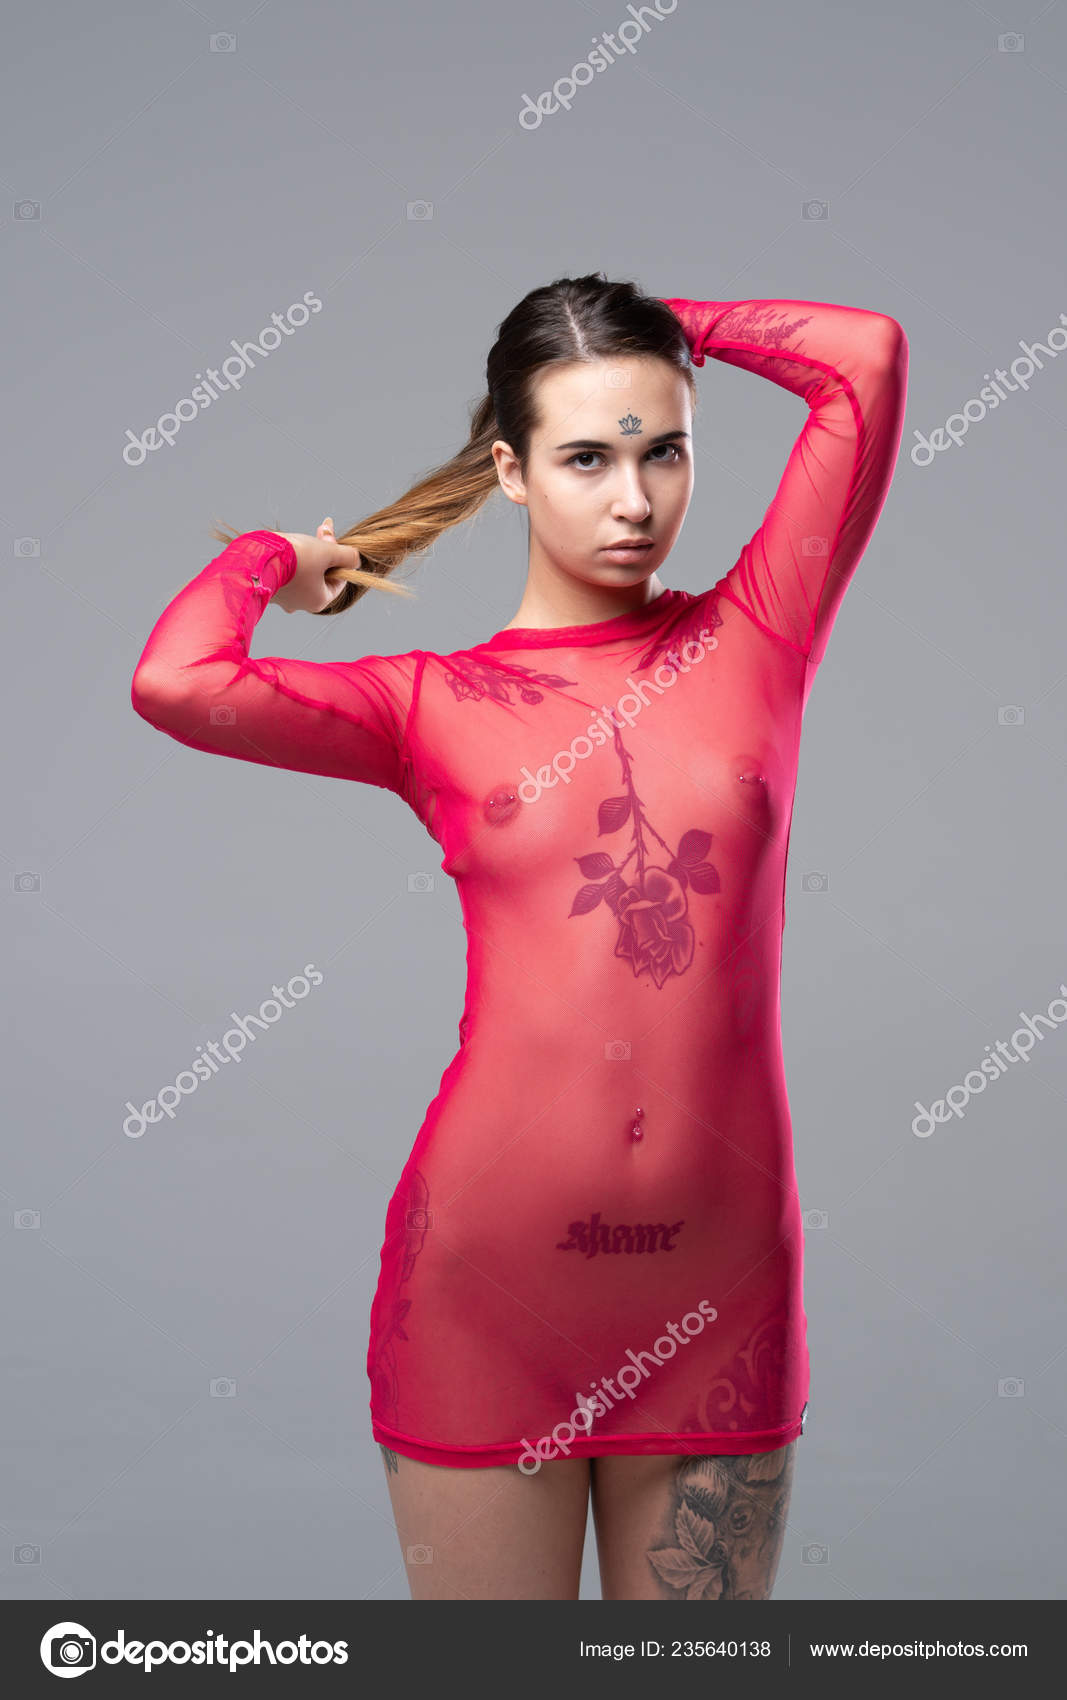 https://st4n.depositphotos.com/10086424/23564/i/1600/depositphotos_235640138-stock-photo-young-beautiful-girl-posing-nude.jpg